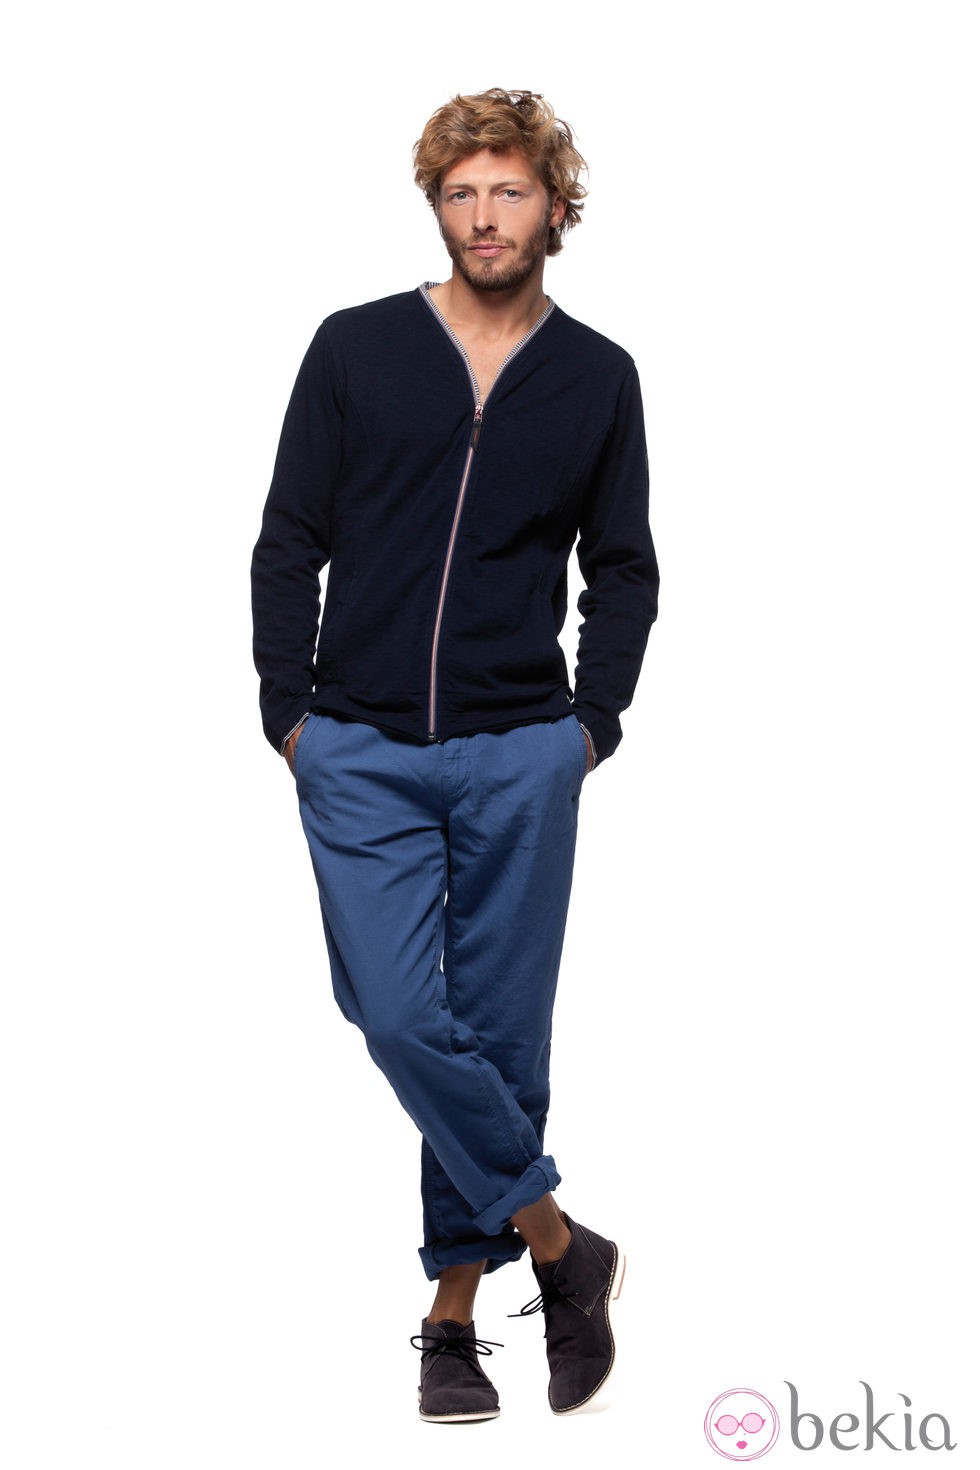 Sudadera negra y pantalones azules de la colección verano 2012 de Chevignon